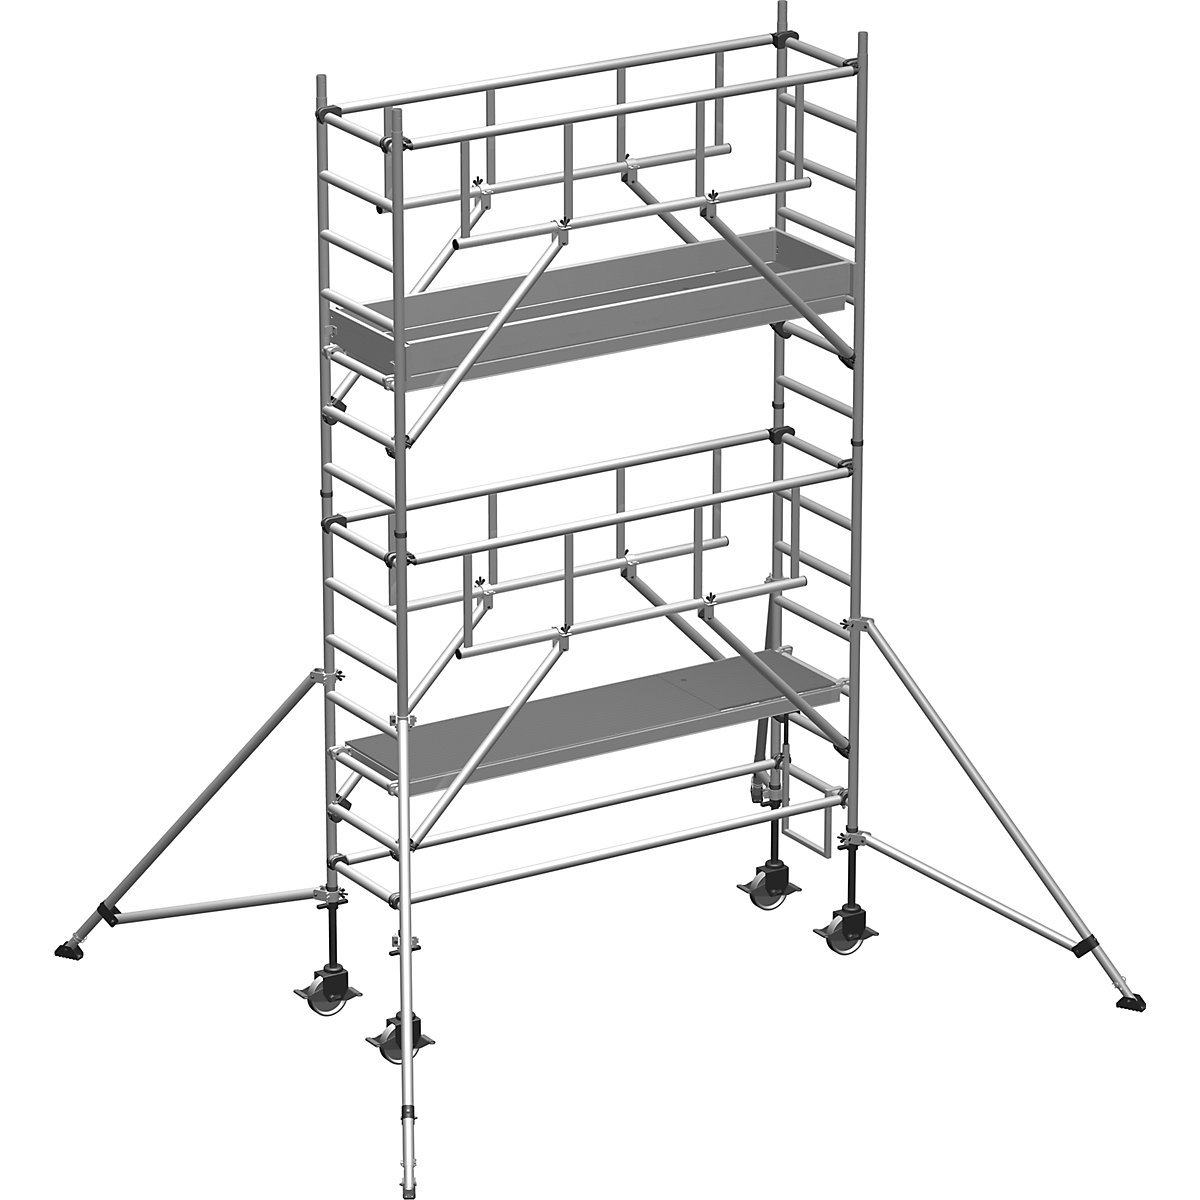 Pomični oder S-PLUS – ZARGES, ploščad 1,80 x 0,60 m, delovna višina 5,35 m